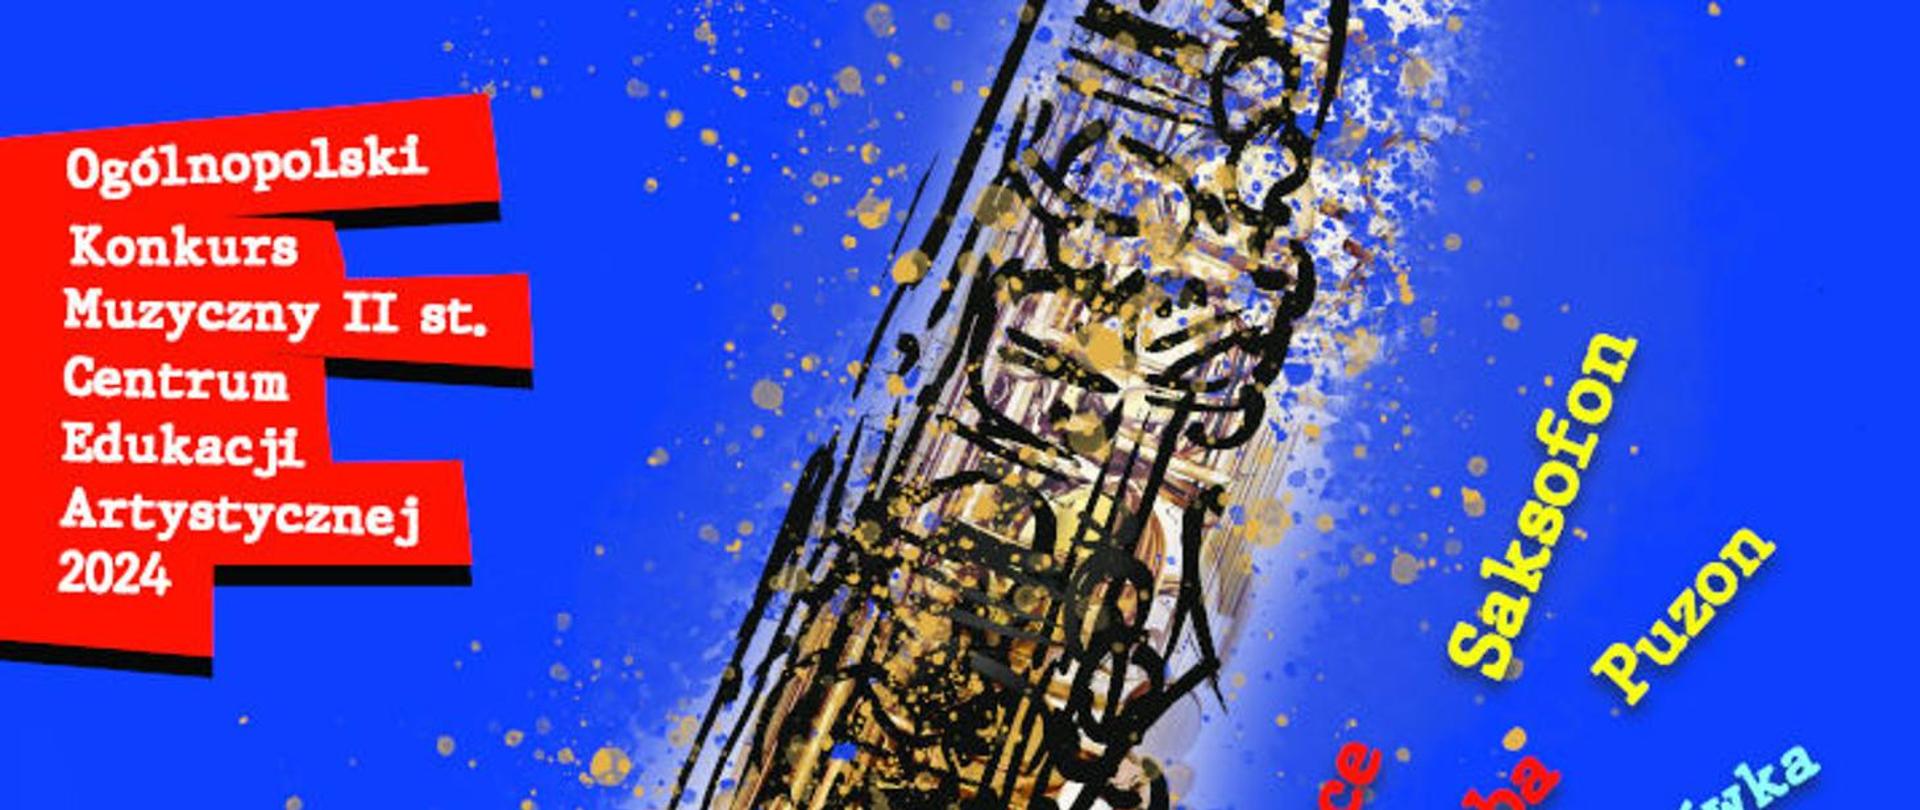 Plakat na niebieskim tle z ikonografią saksofonu Konkursu Muzycznego Centrum Edukacji Artystycznej dla uczniów szkół muzycznych II stopnia - EDYCJA 2024